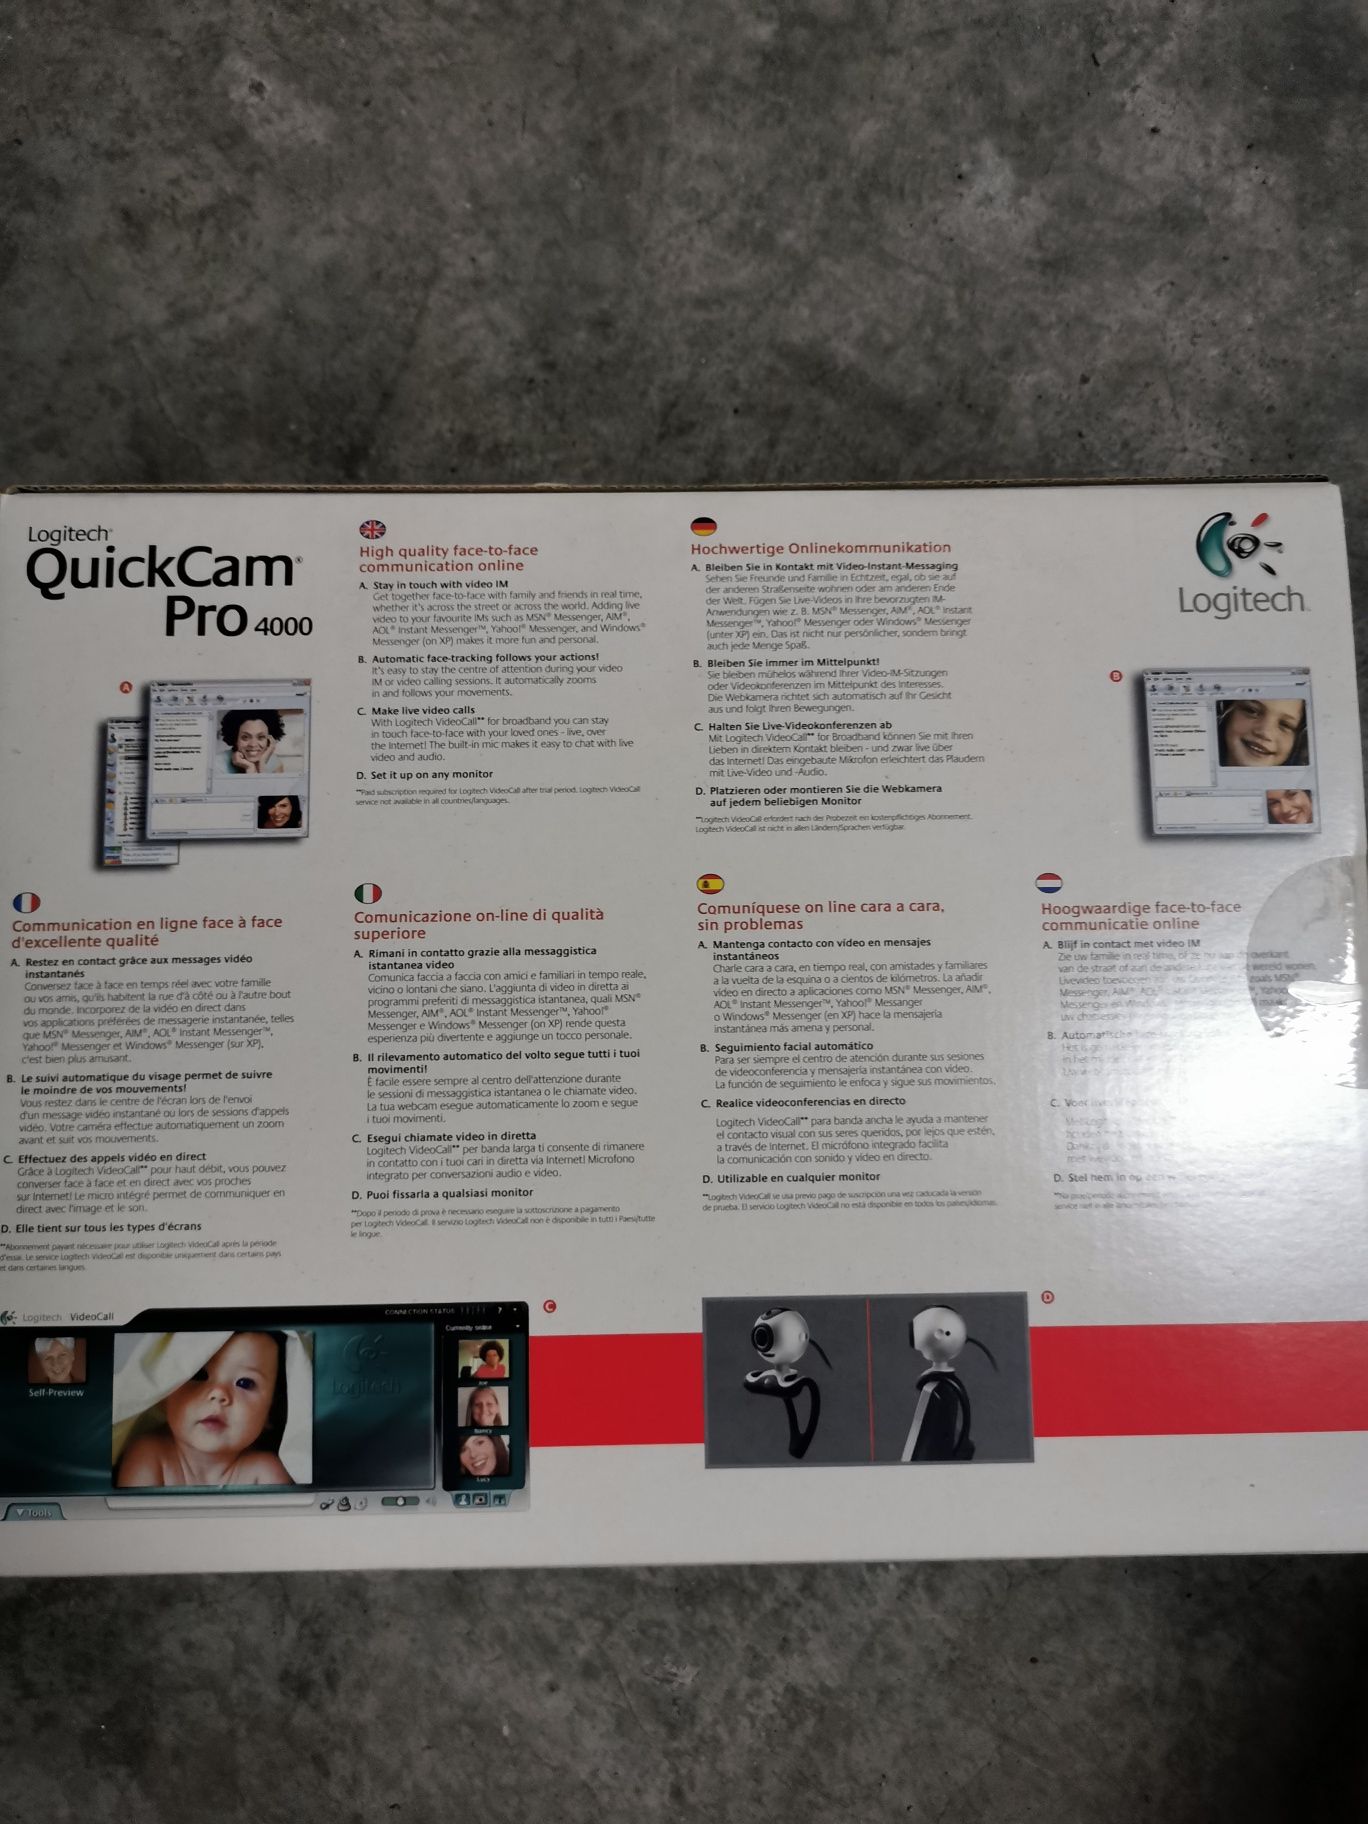 WebCam para PC Pro 4000 nova